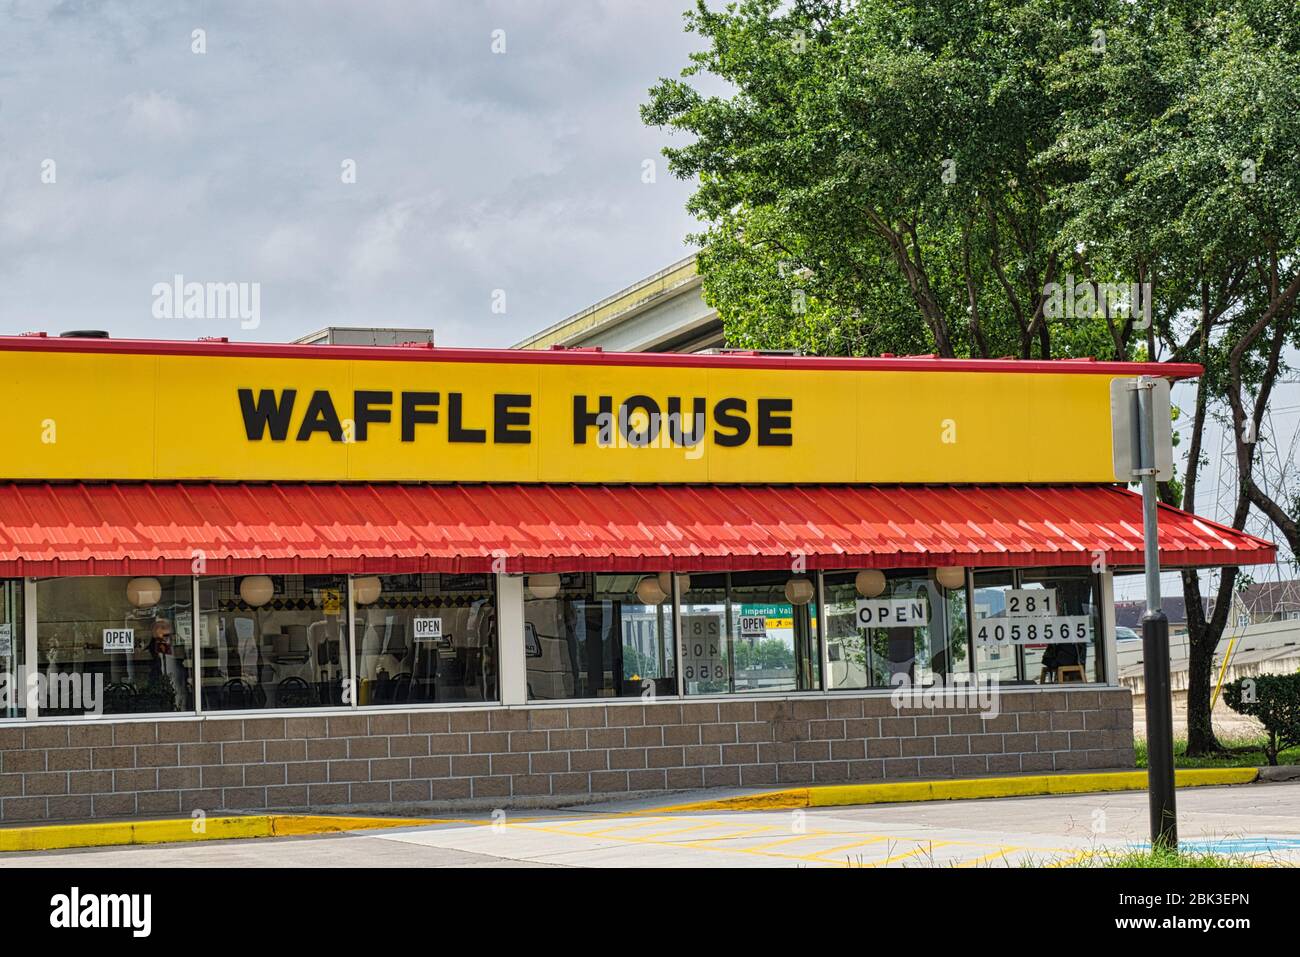 Waffle House situato sulla North Sam Houston Pkwy a Houston, Texas. Catena di ristoranti americani con principalmente localita' del Sud degli Stati Uniti. Fondata nel 1955. Foto Stock